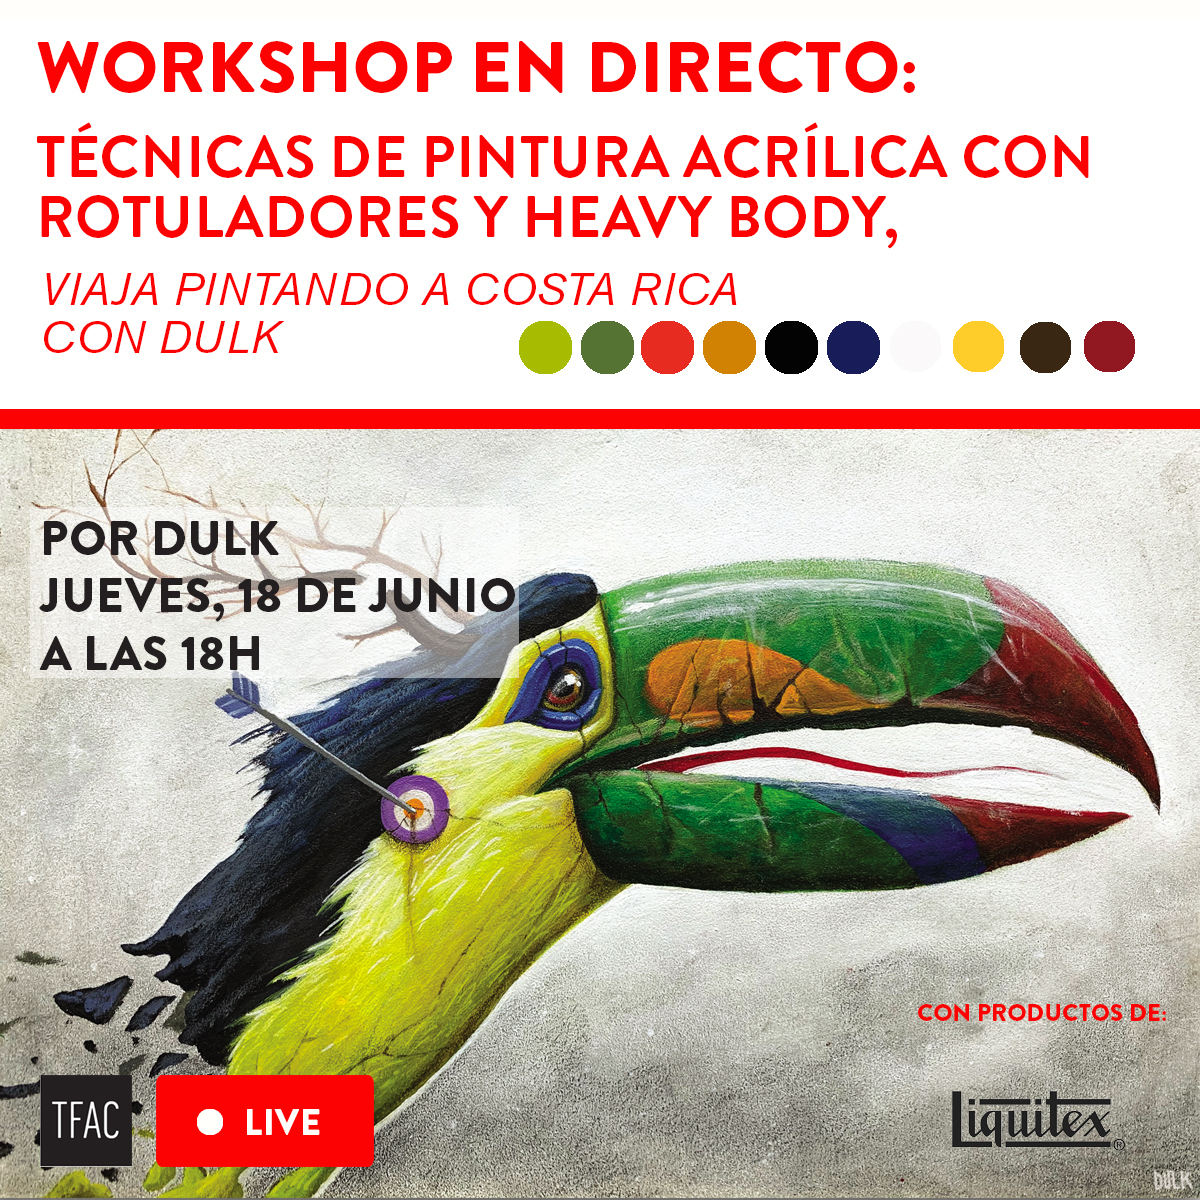 Viaja pintando con Dulk a Costa Rica: Workshop de técnicas de pintura acrílica con rotuladores y heavy body